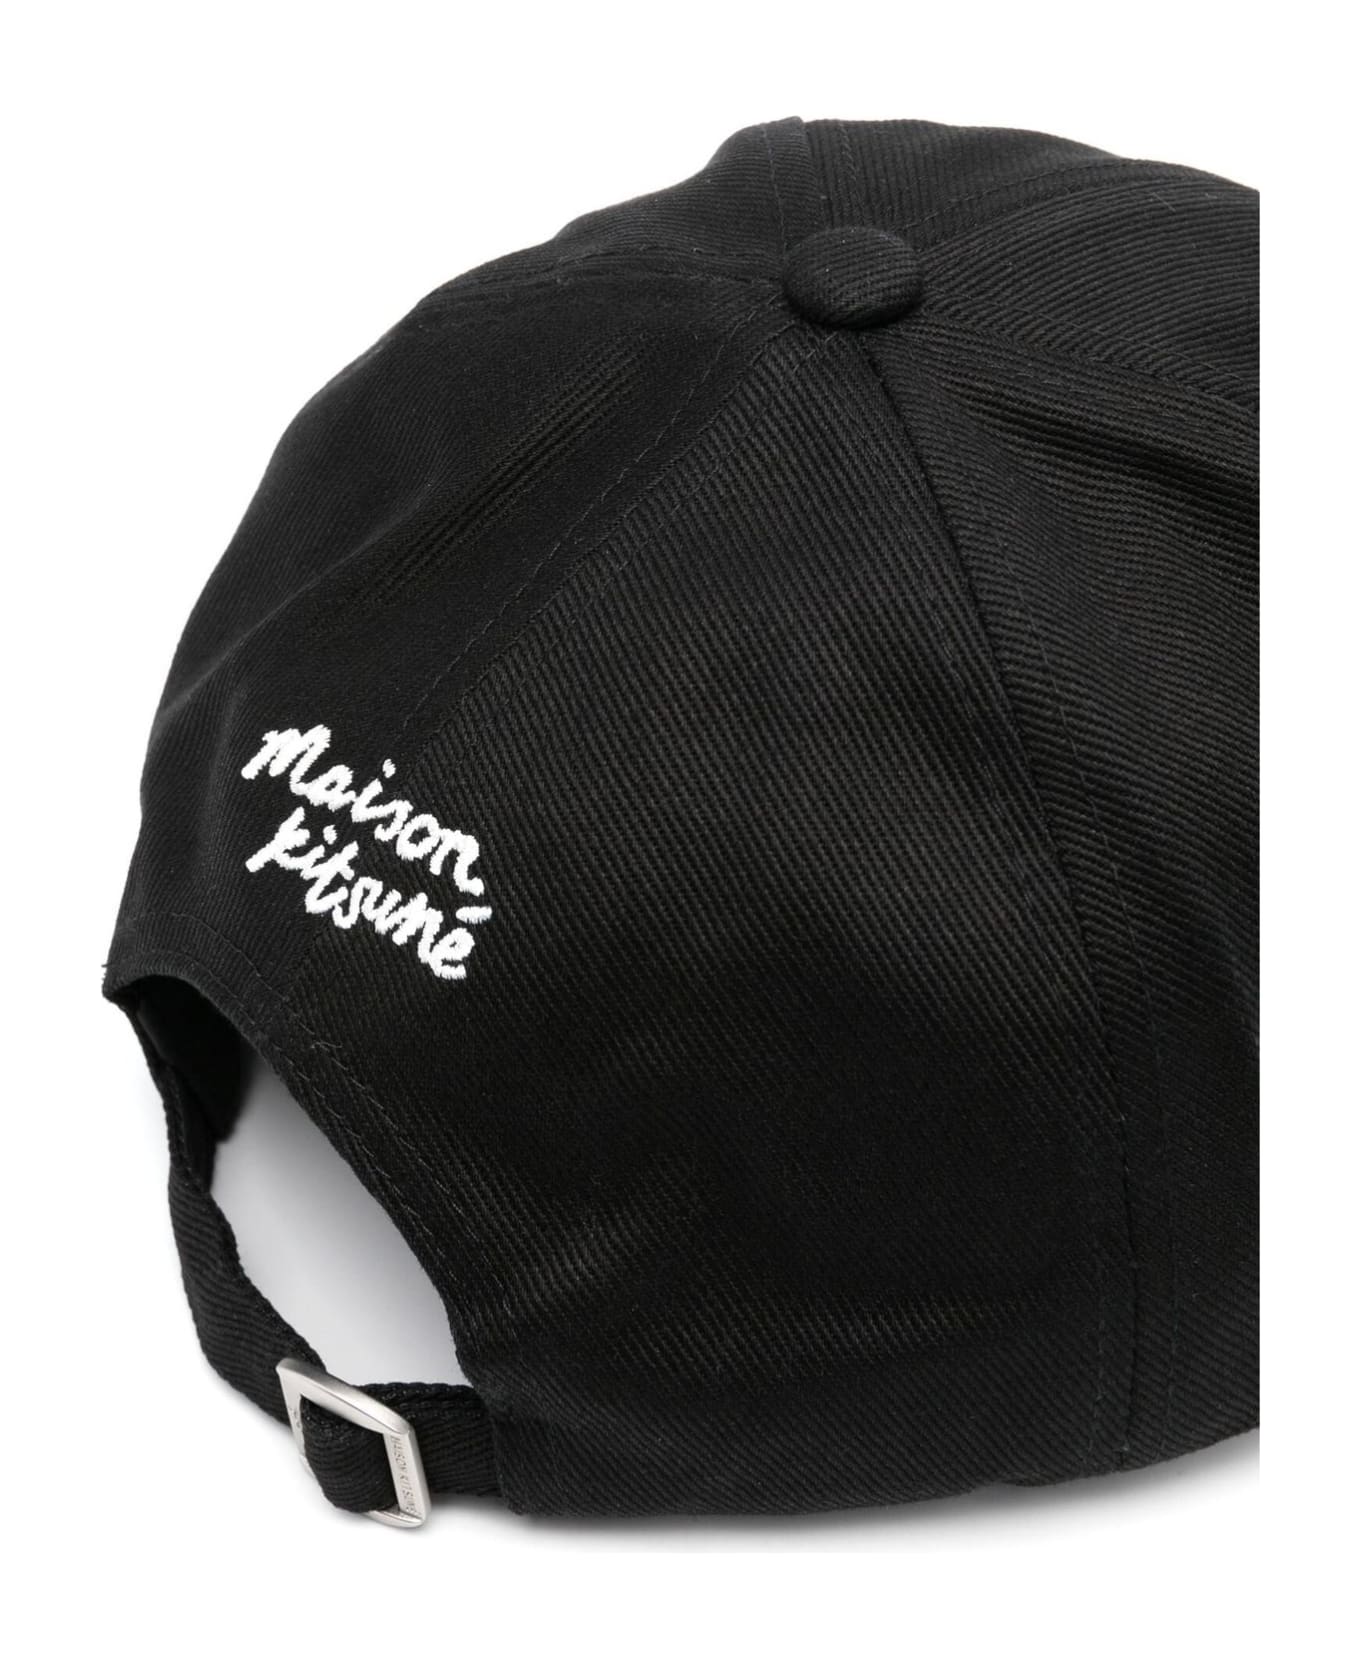 Maison Kitsuné Maison Kitsune' Hats Black - Black